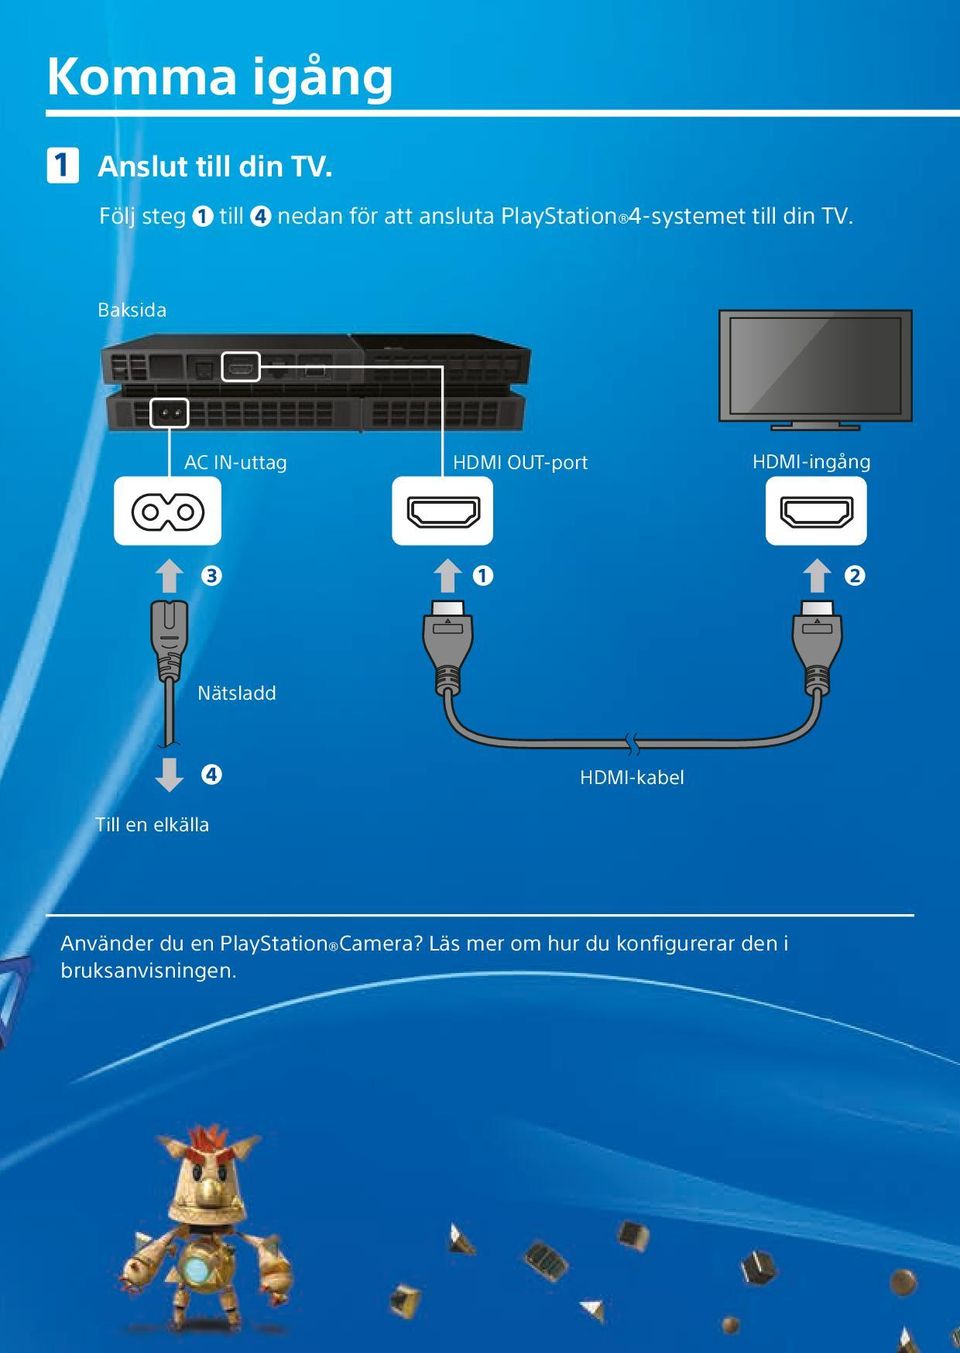 TV. Baksida AC IN-uttag HDMI OUT-port HDMI-ingång Nätsladd Till en